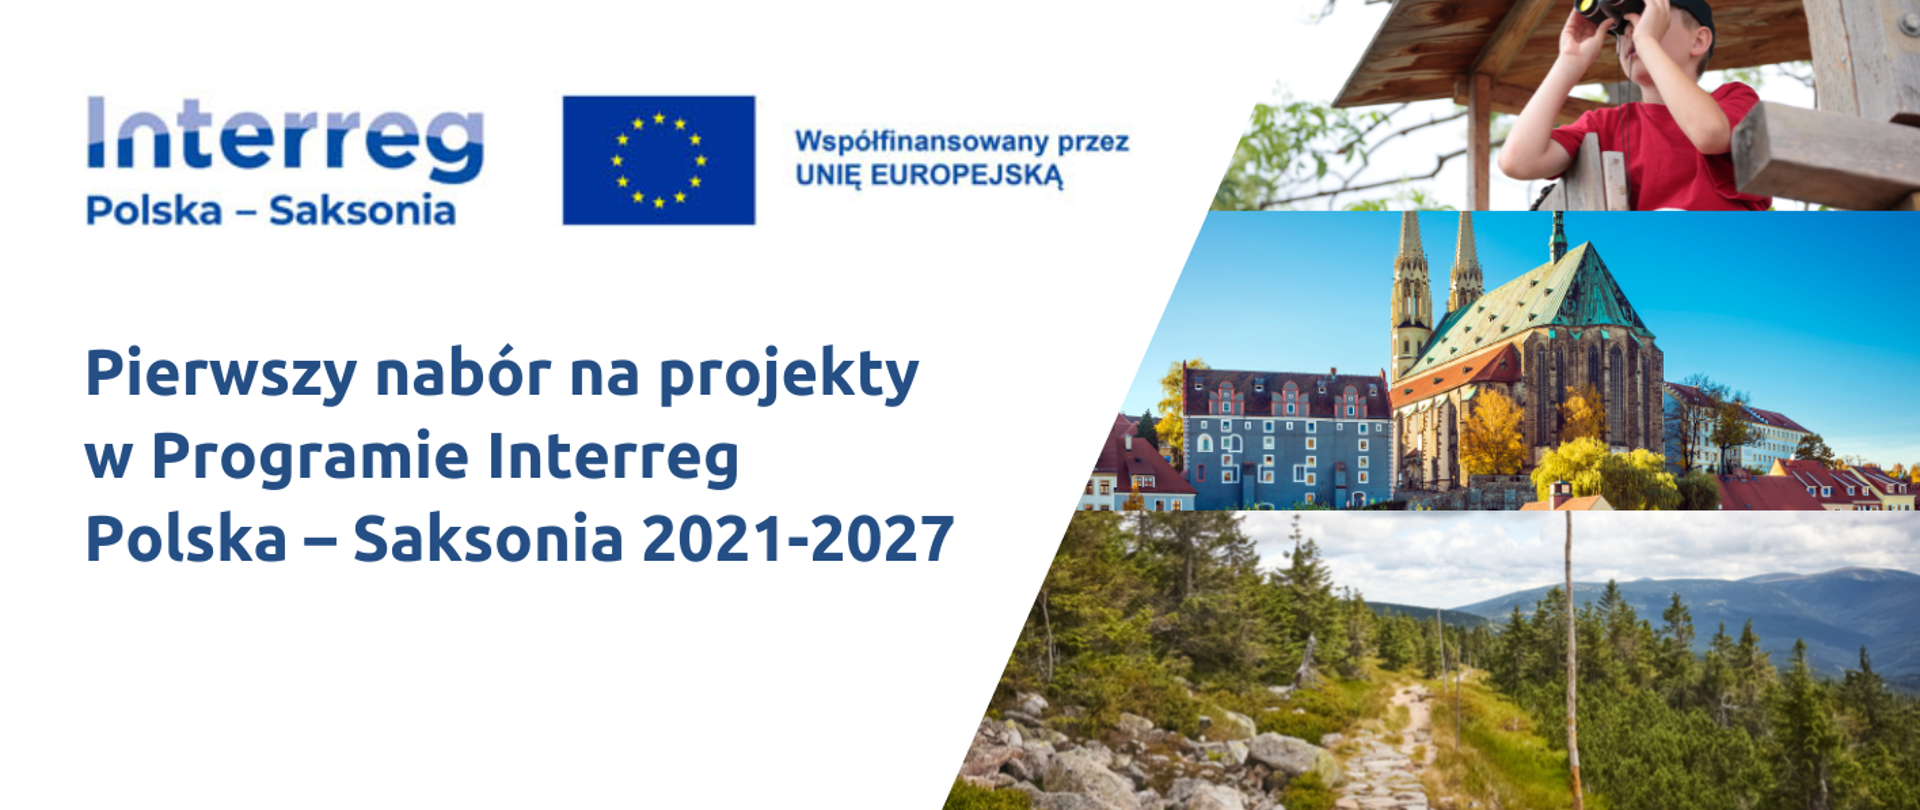 Pierwszy nabór w Programie Interreg Polska – Saksonia 2021-2027 otwarty